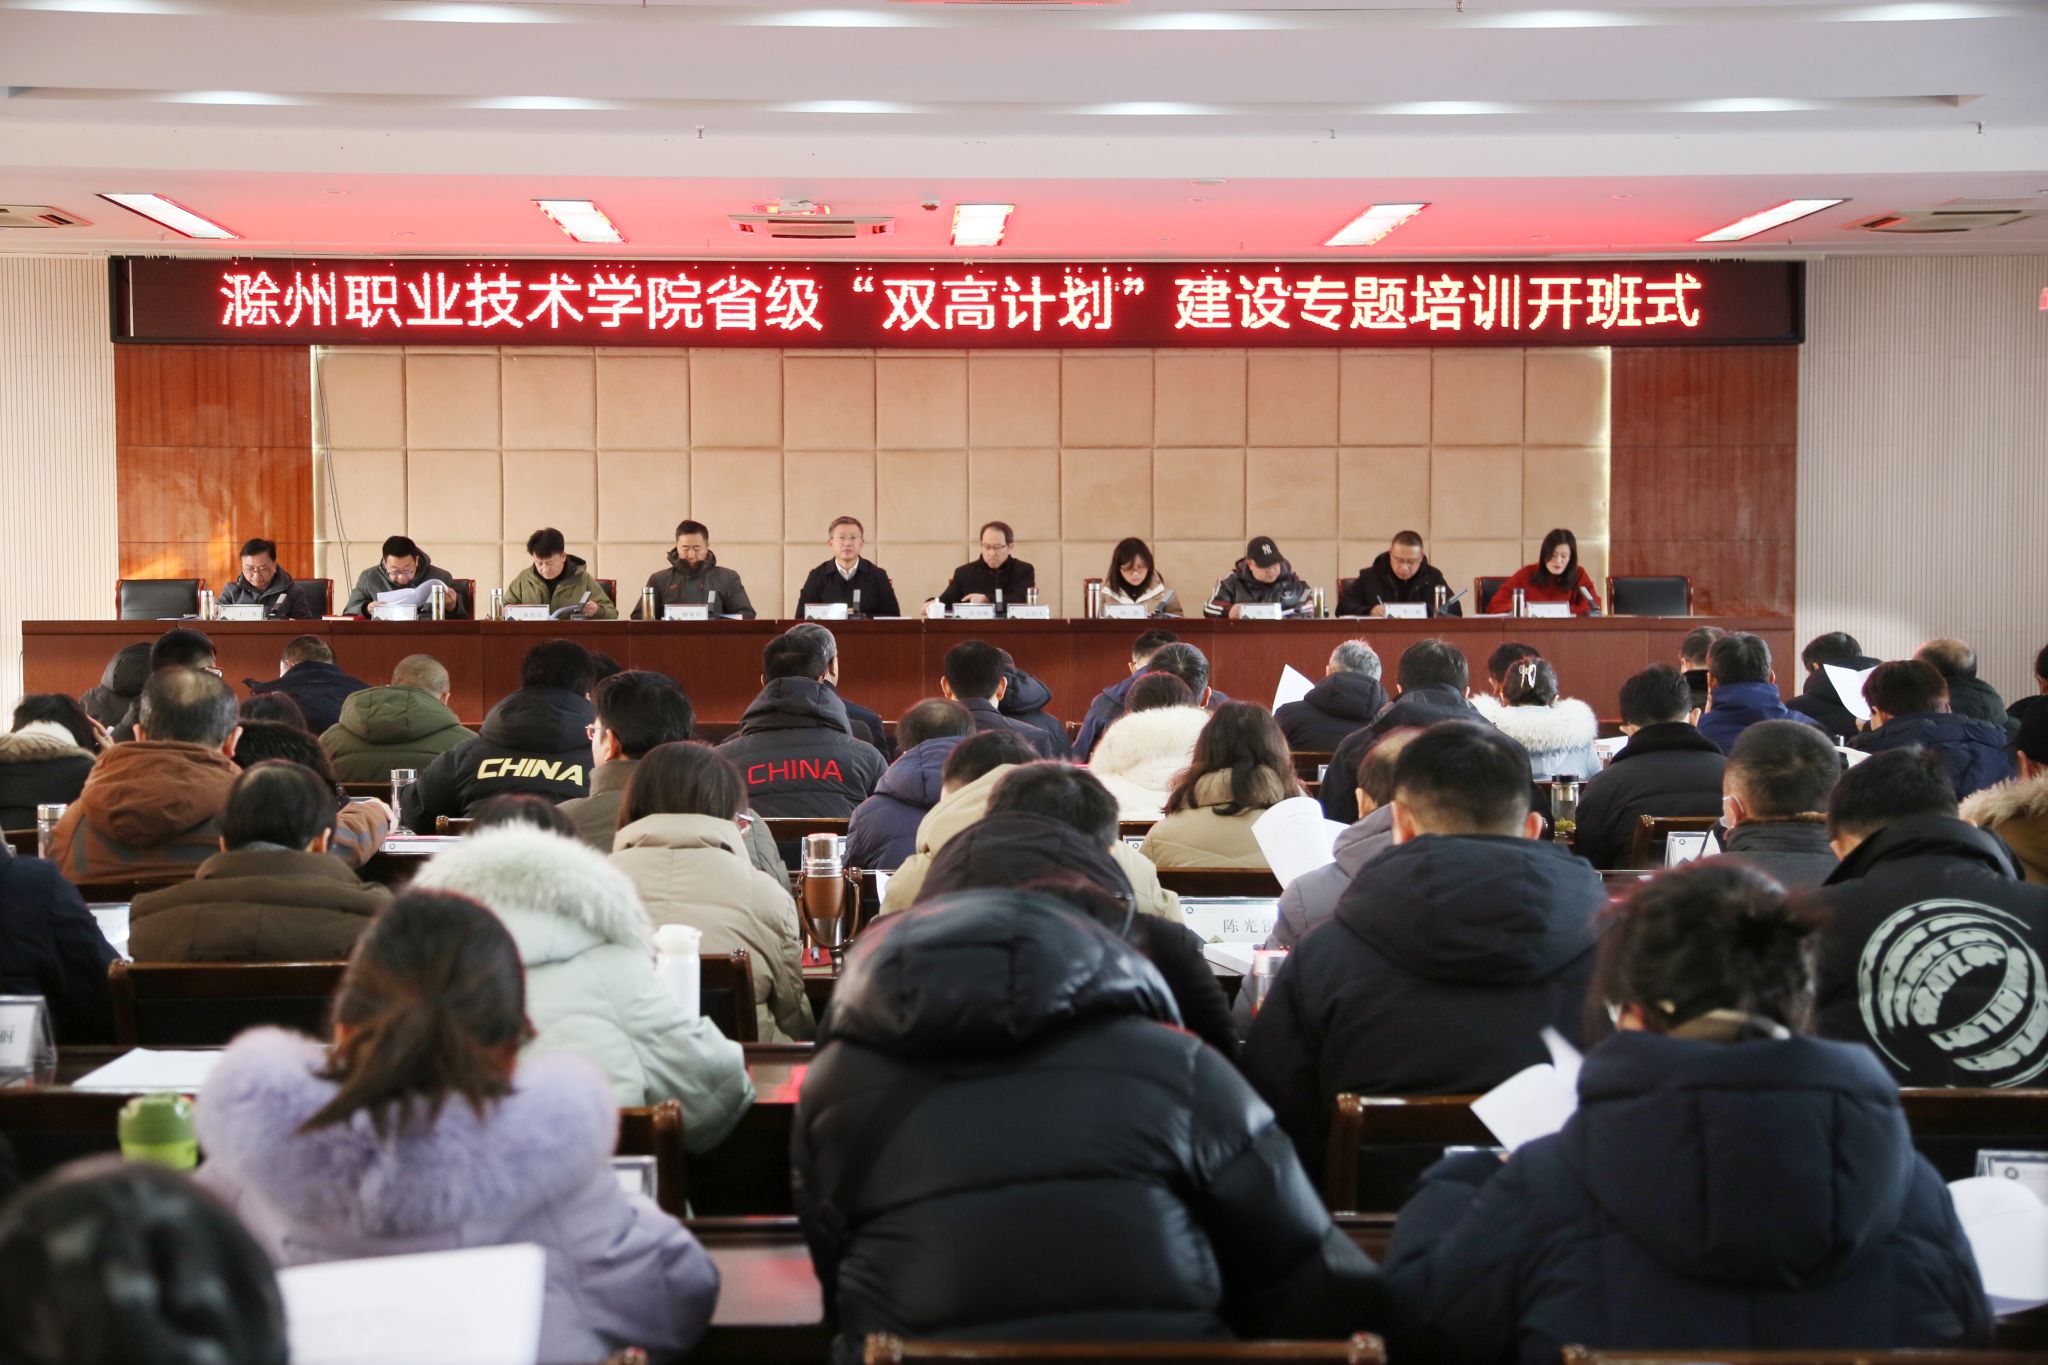 集团理事长单位滁州职业技术bv韦德举办省级“双高计划”建设专题培训班开班式